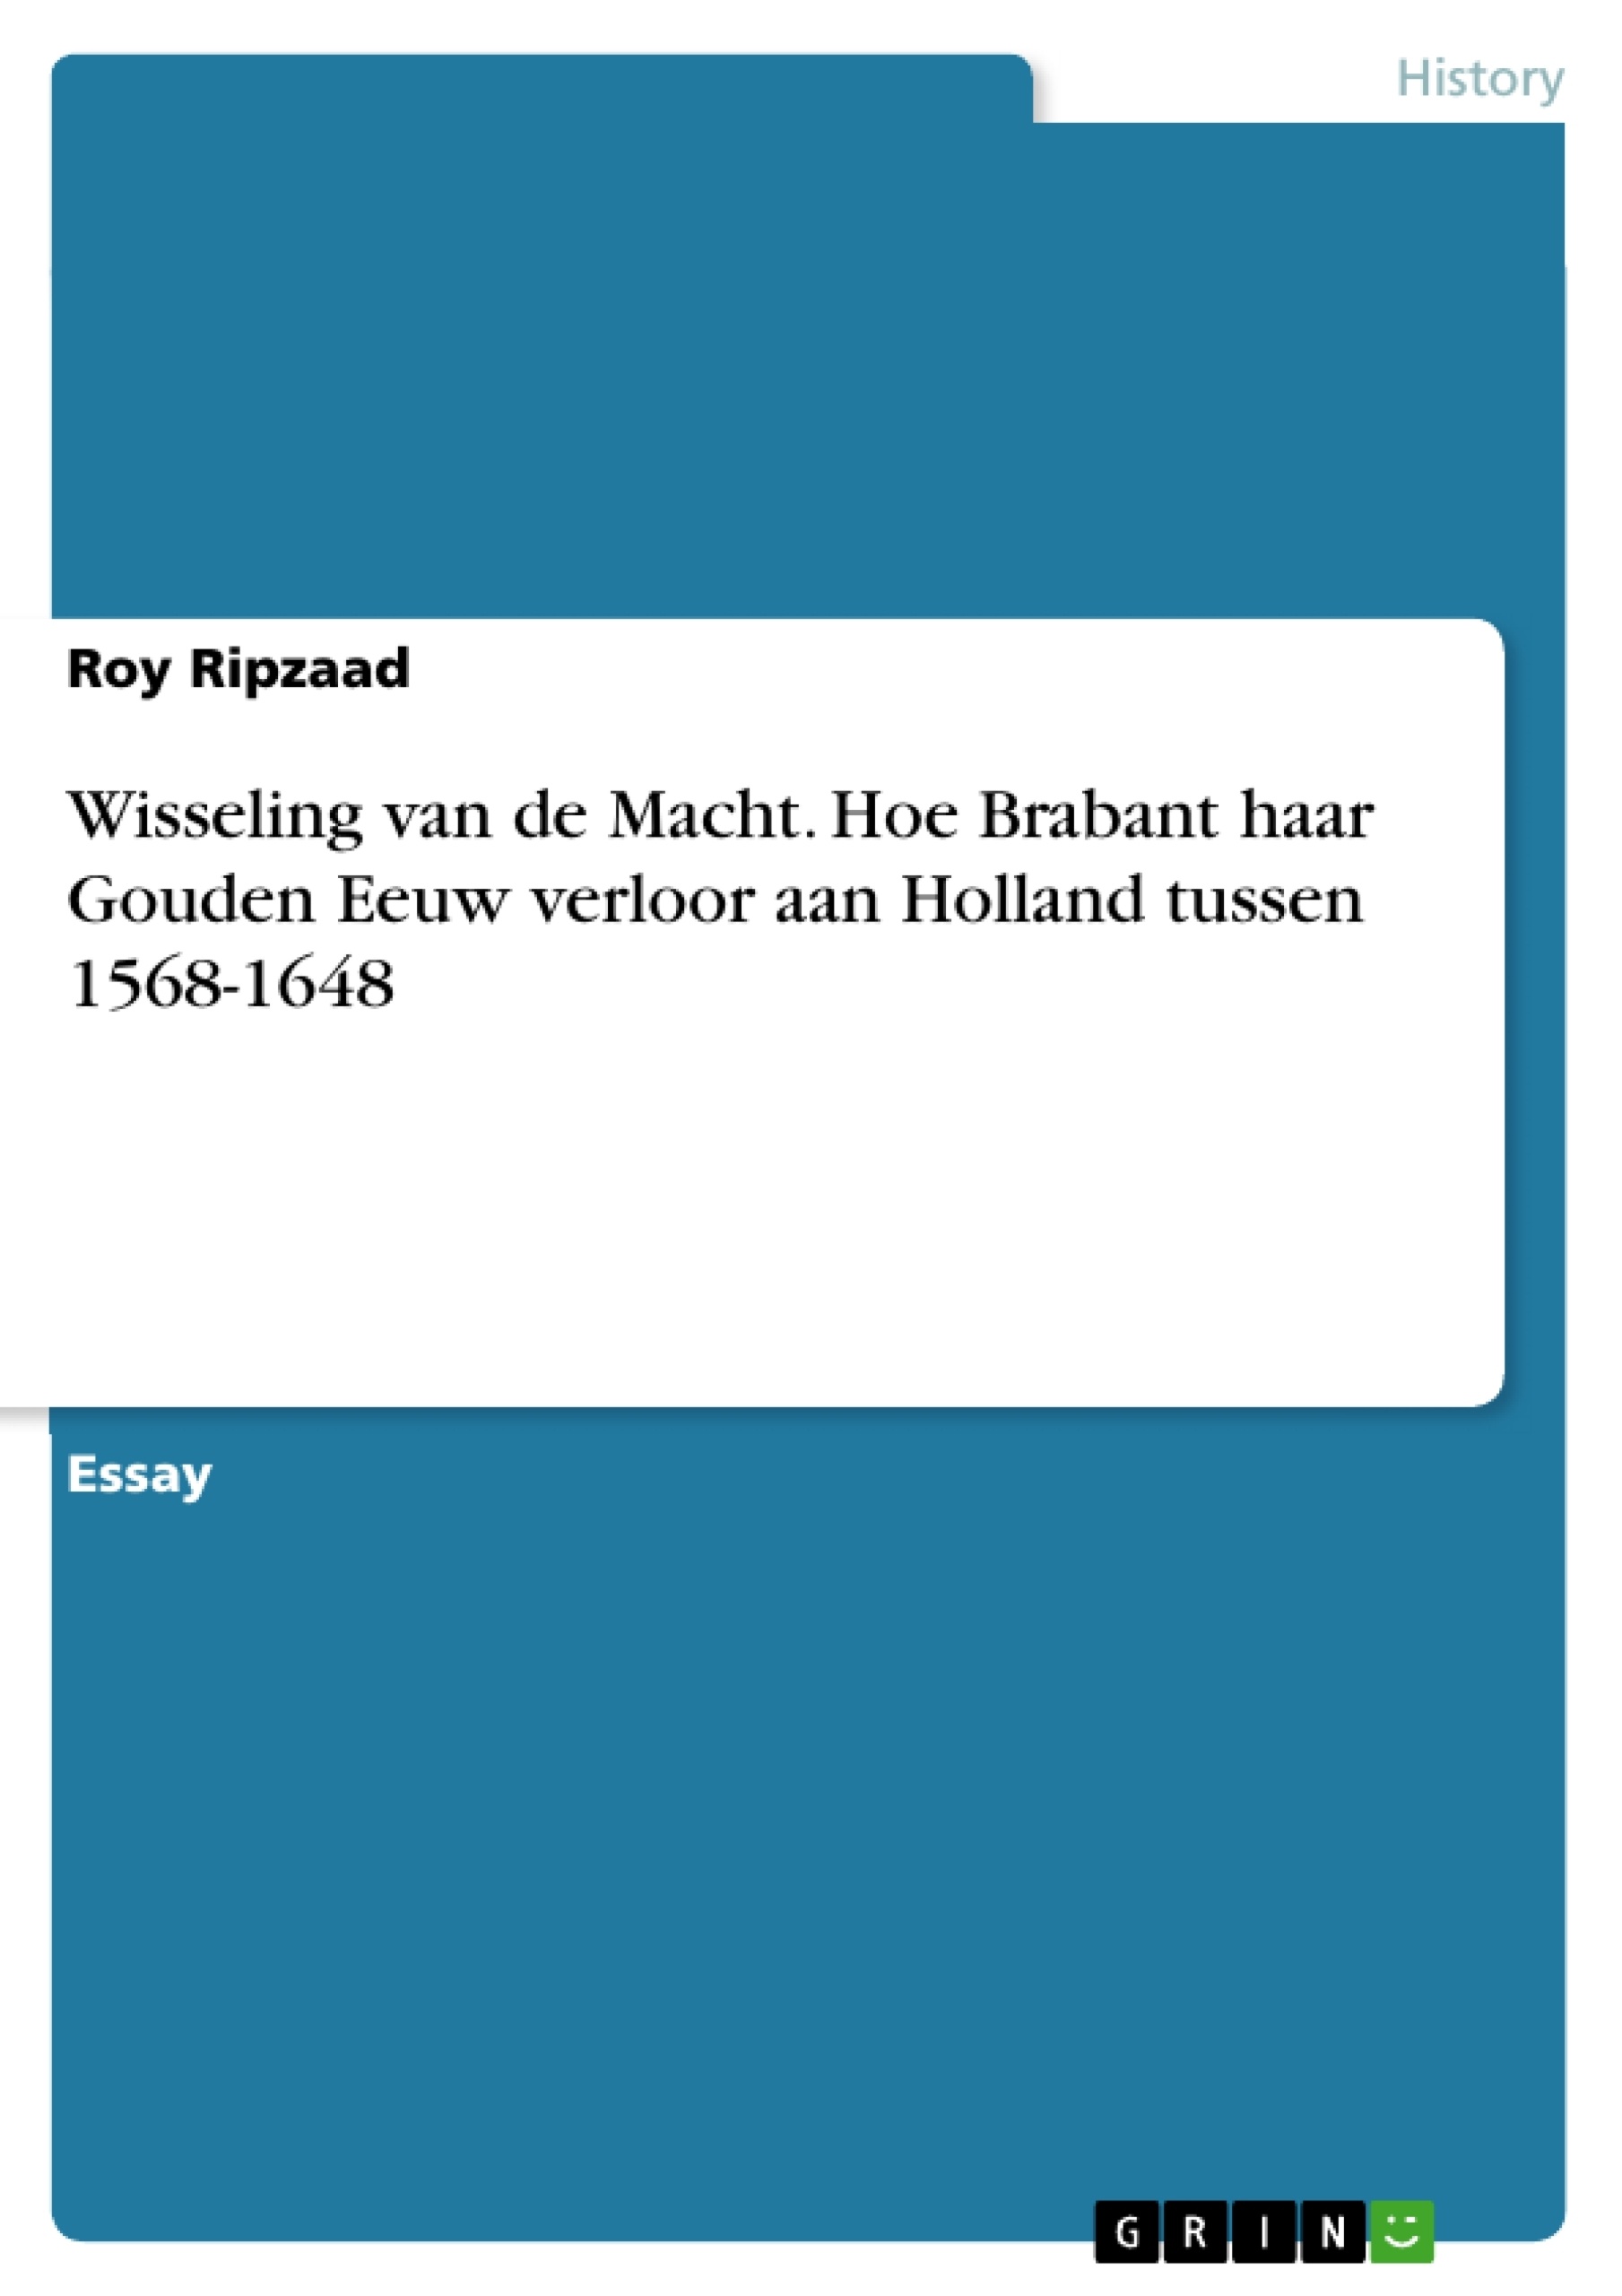 Titre: Wisseling van de Macht. Hoe Brabant haar Gouden Eeuw verloor aan Holland tussen 1568-1648